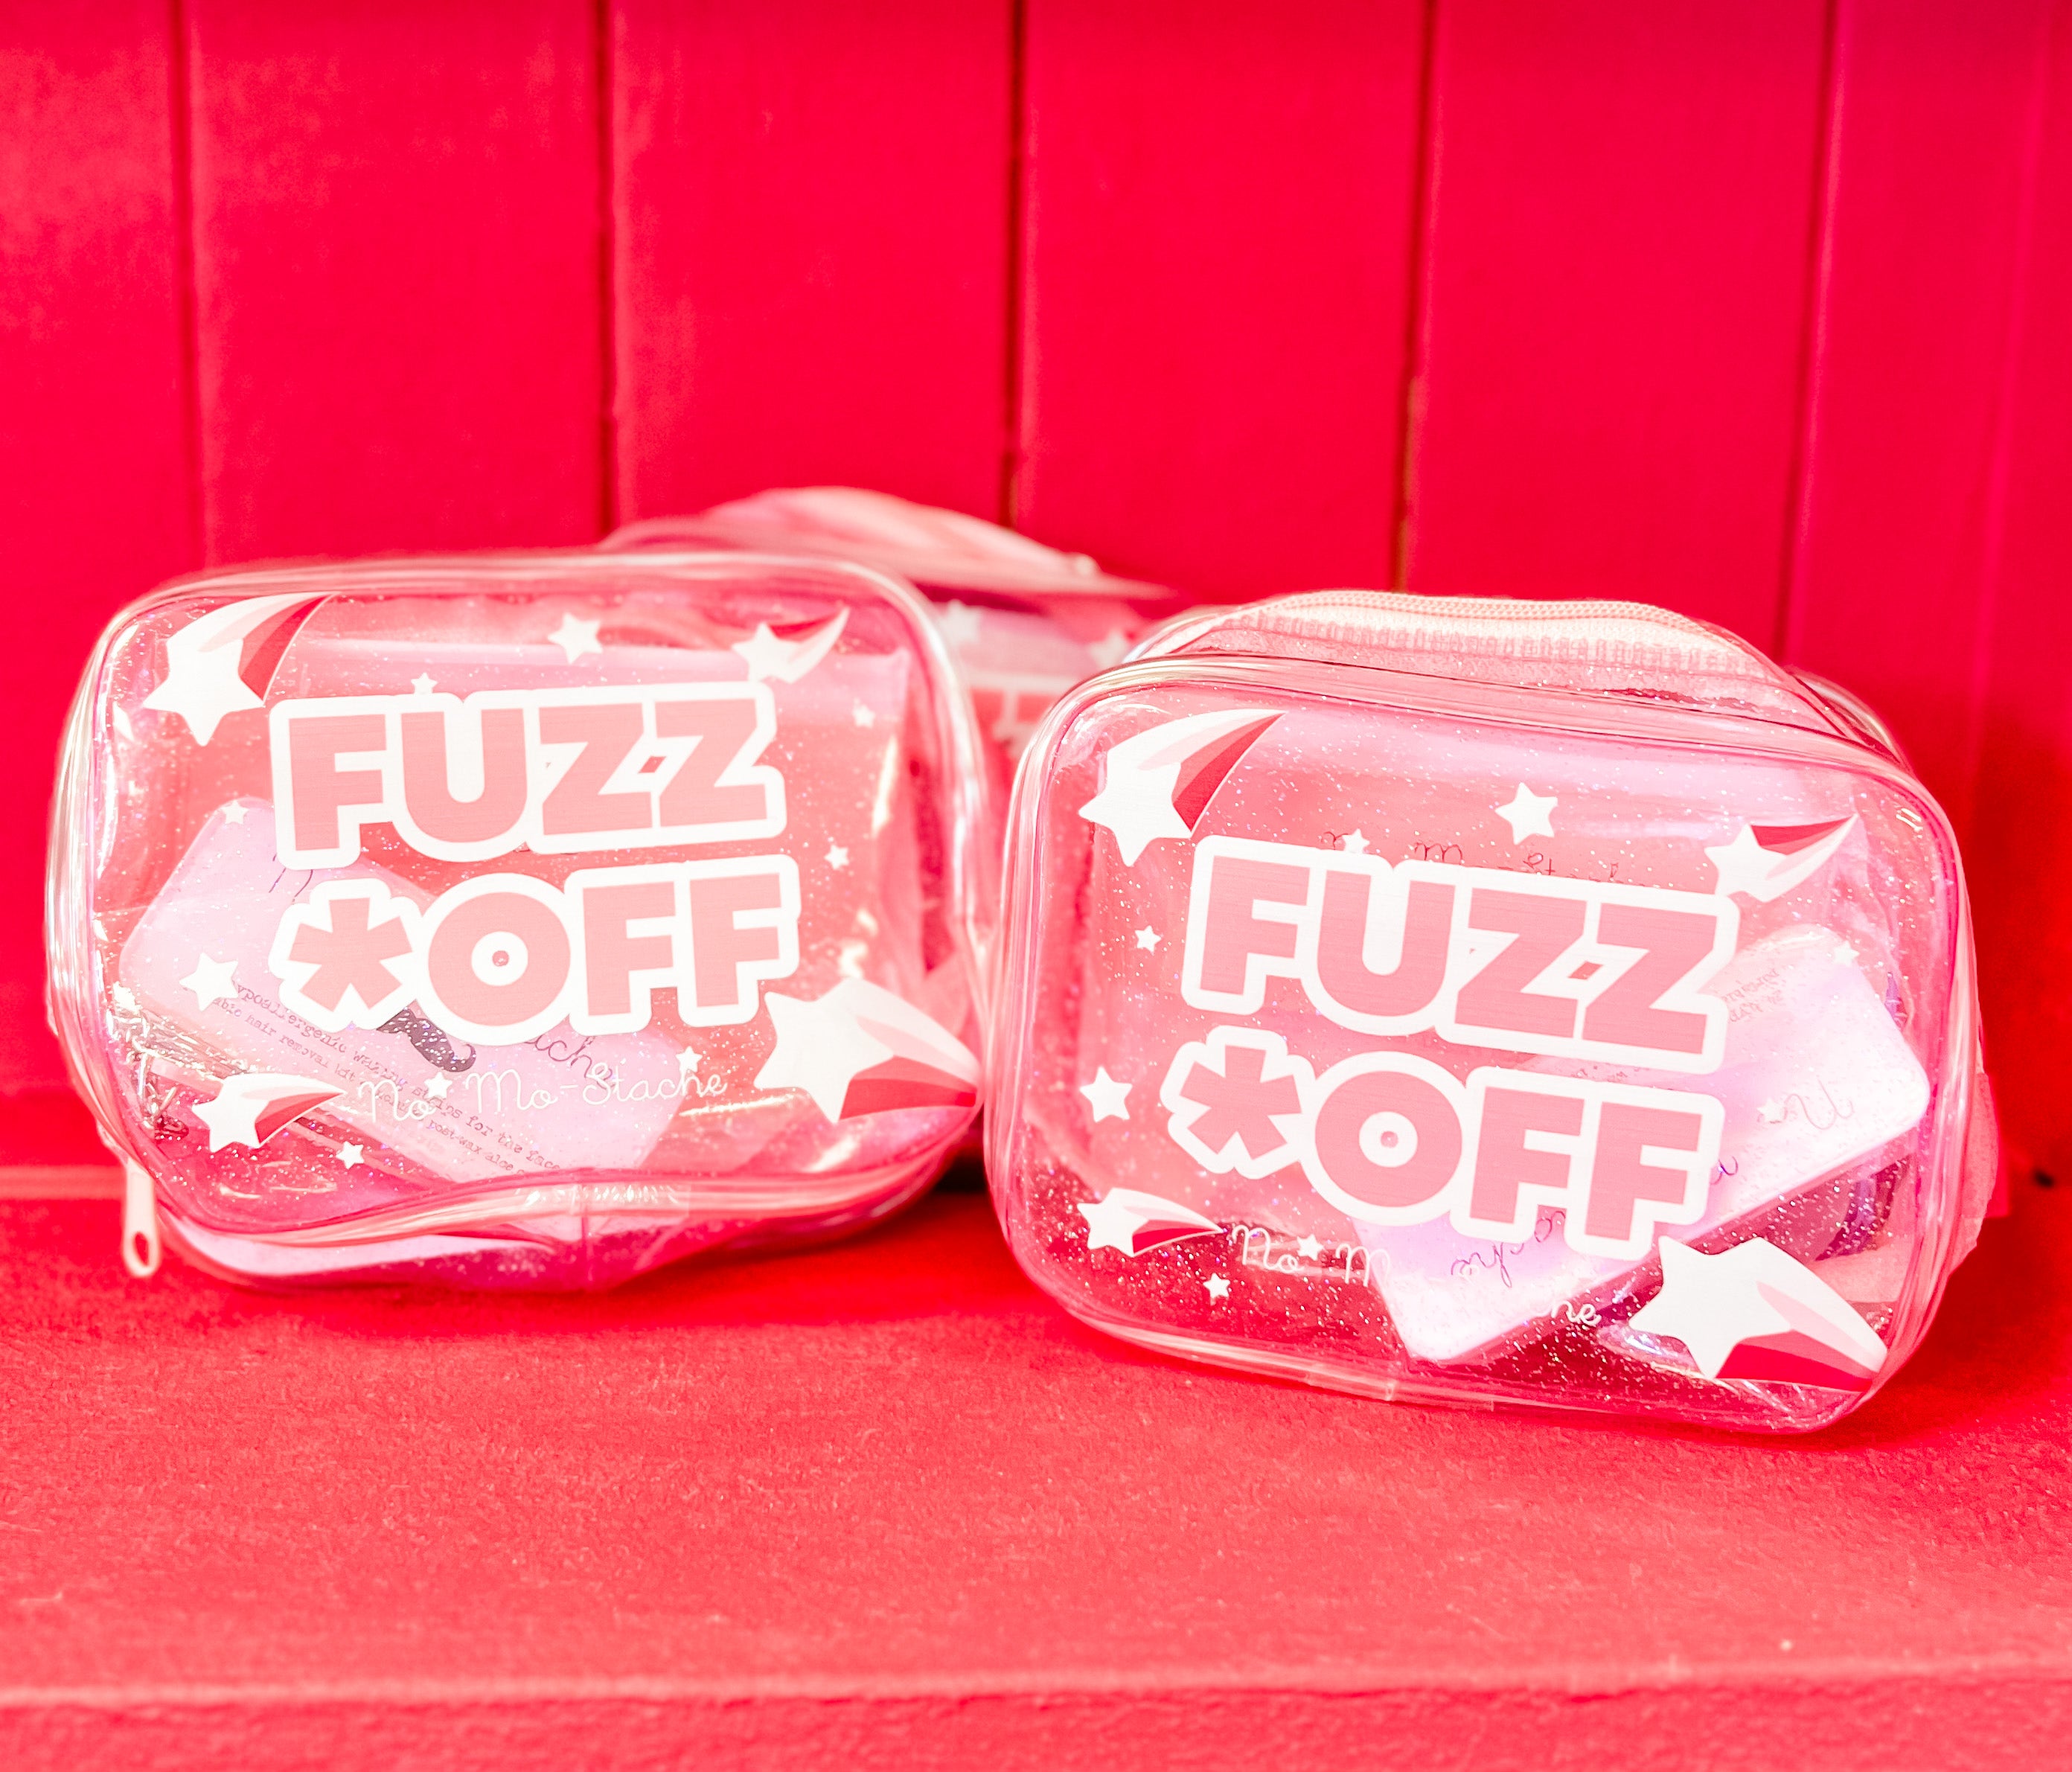 Fuzz Off Gift Set NO MO-STACHE